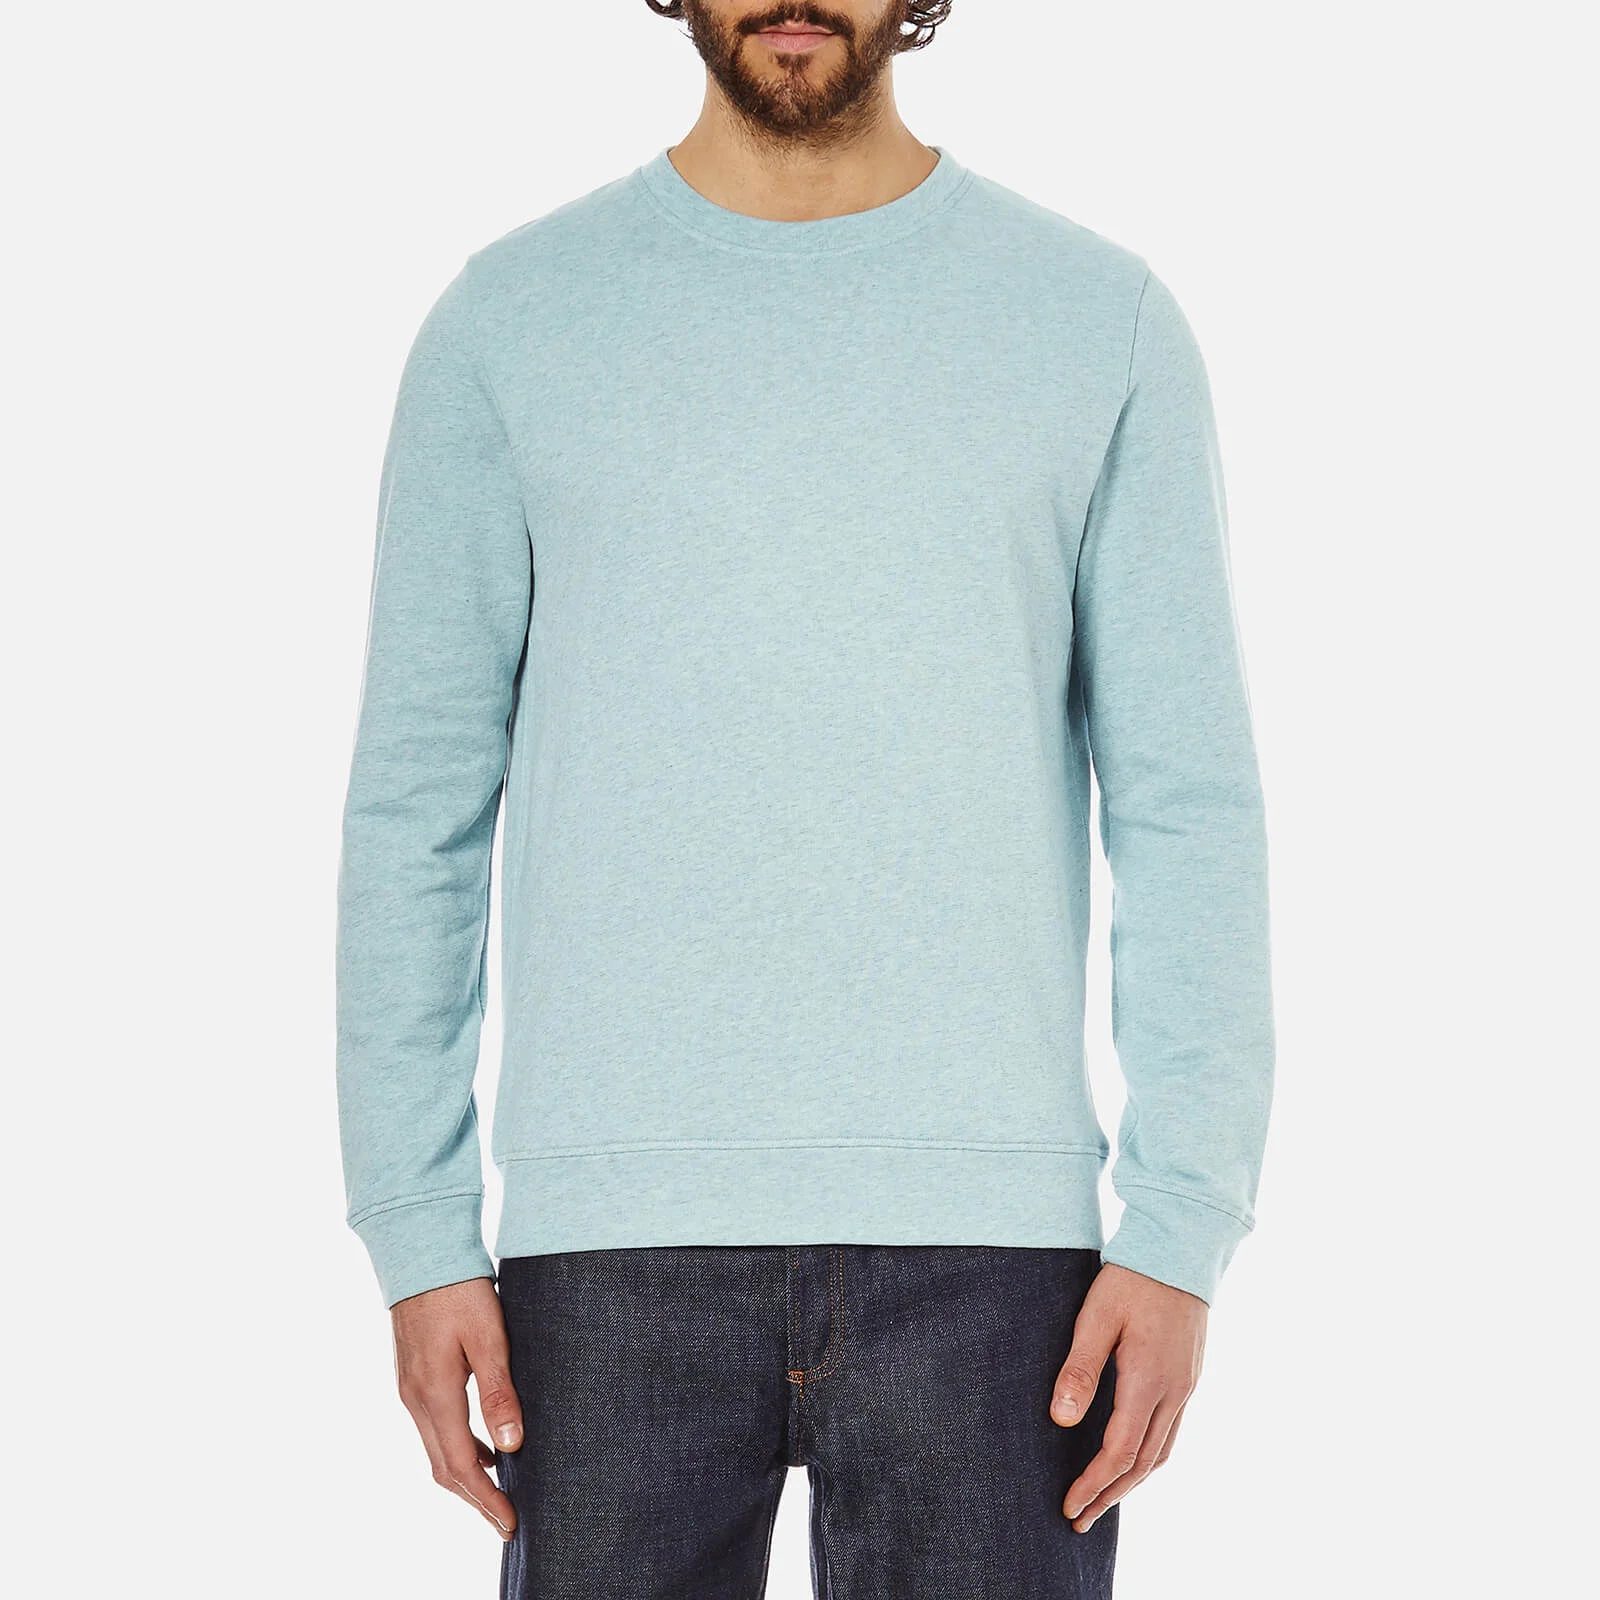 A.P.C. Men's Basique Long Sleeved Sweatshirt - Bleu Clair Image 1